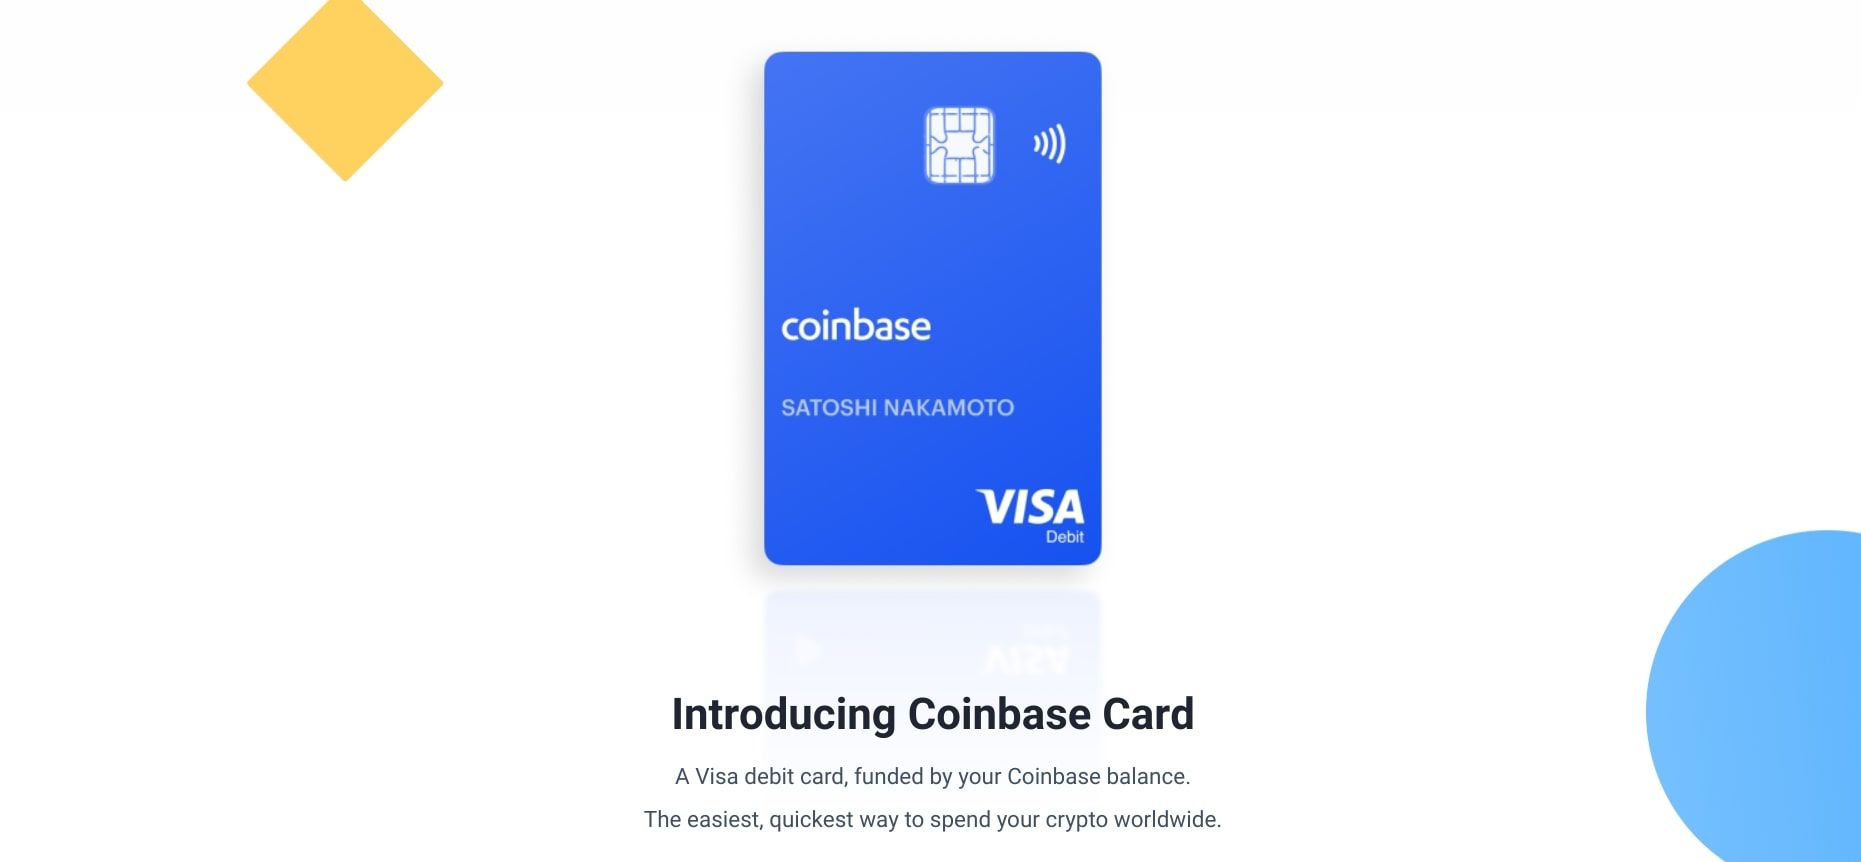 coinbase visa card webpage screenshot